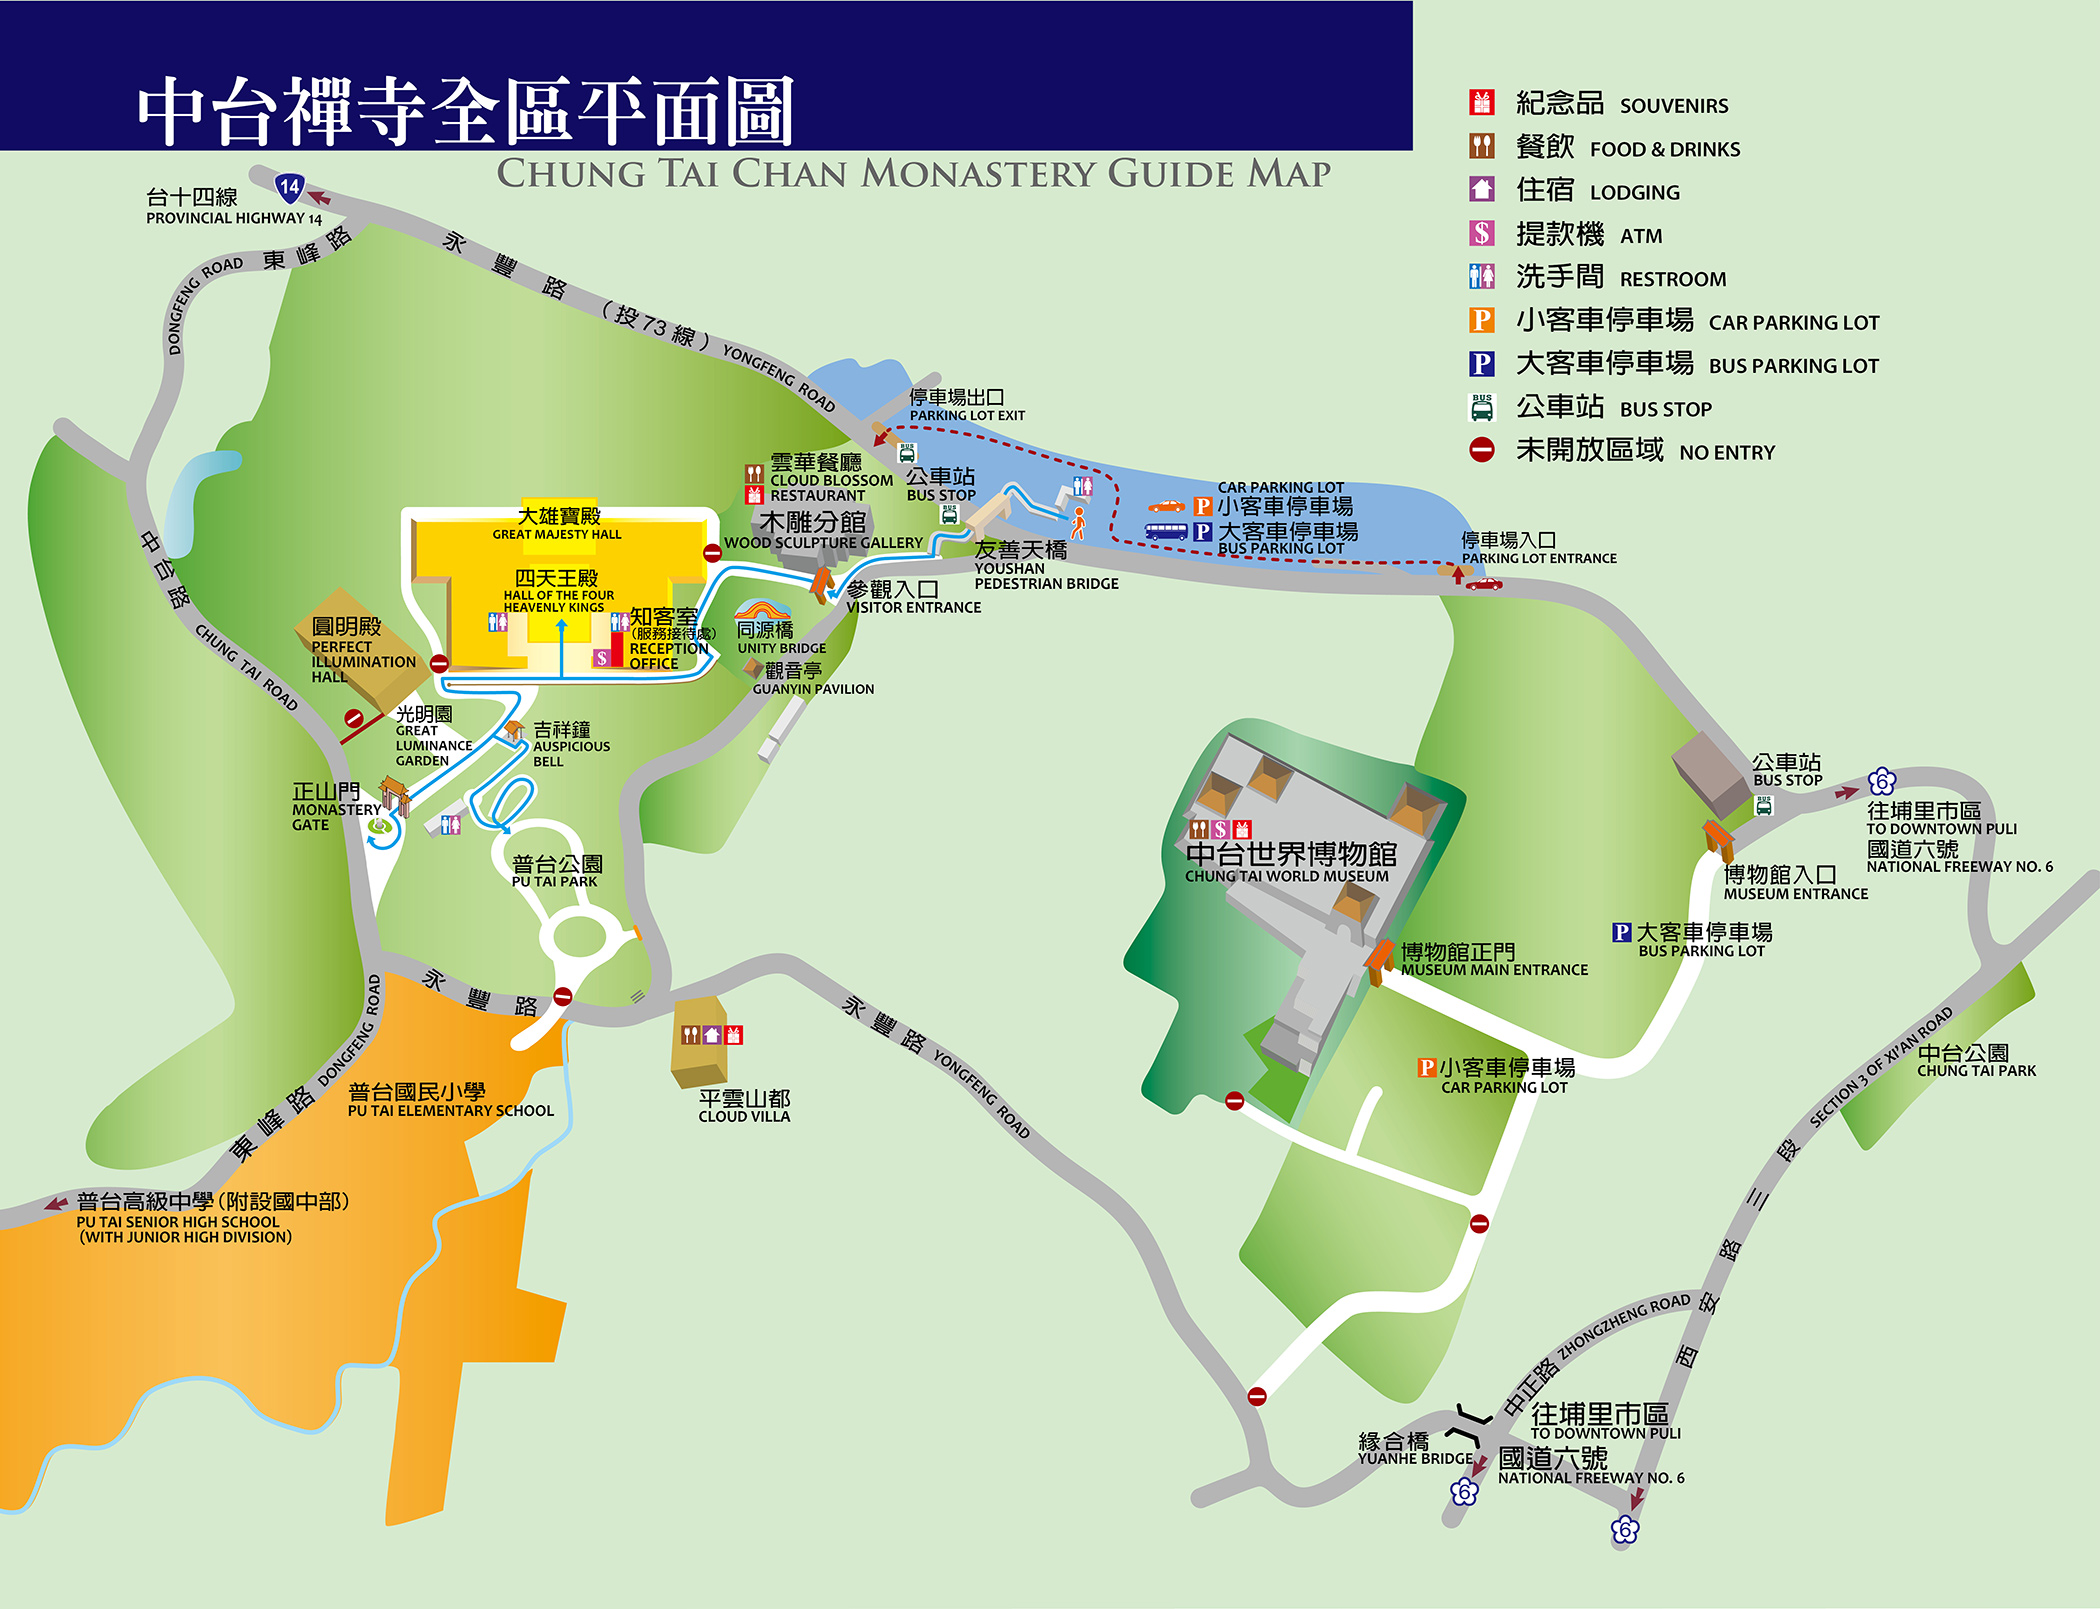 Map of Chung Tai